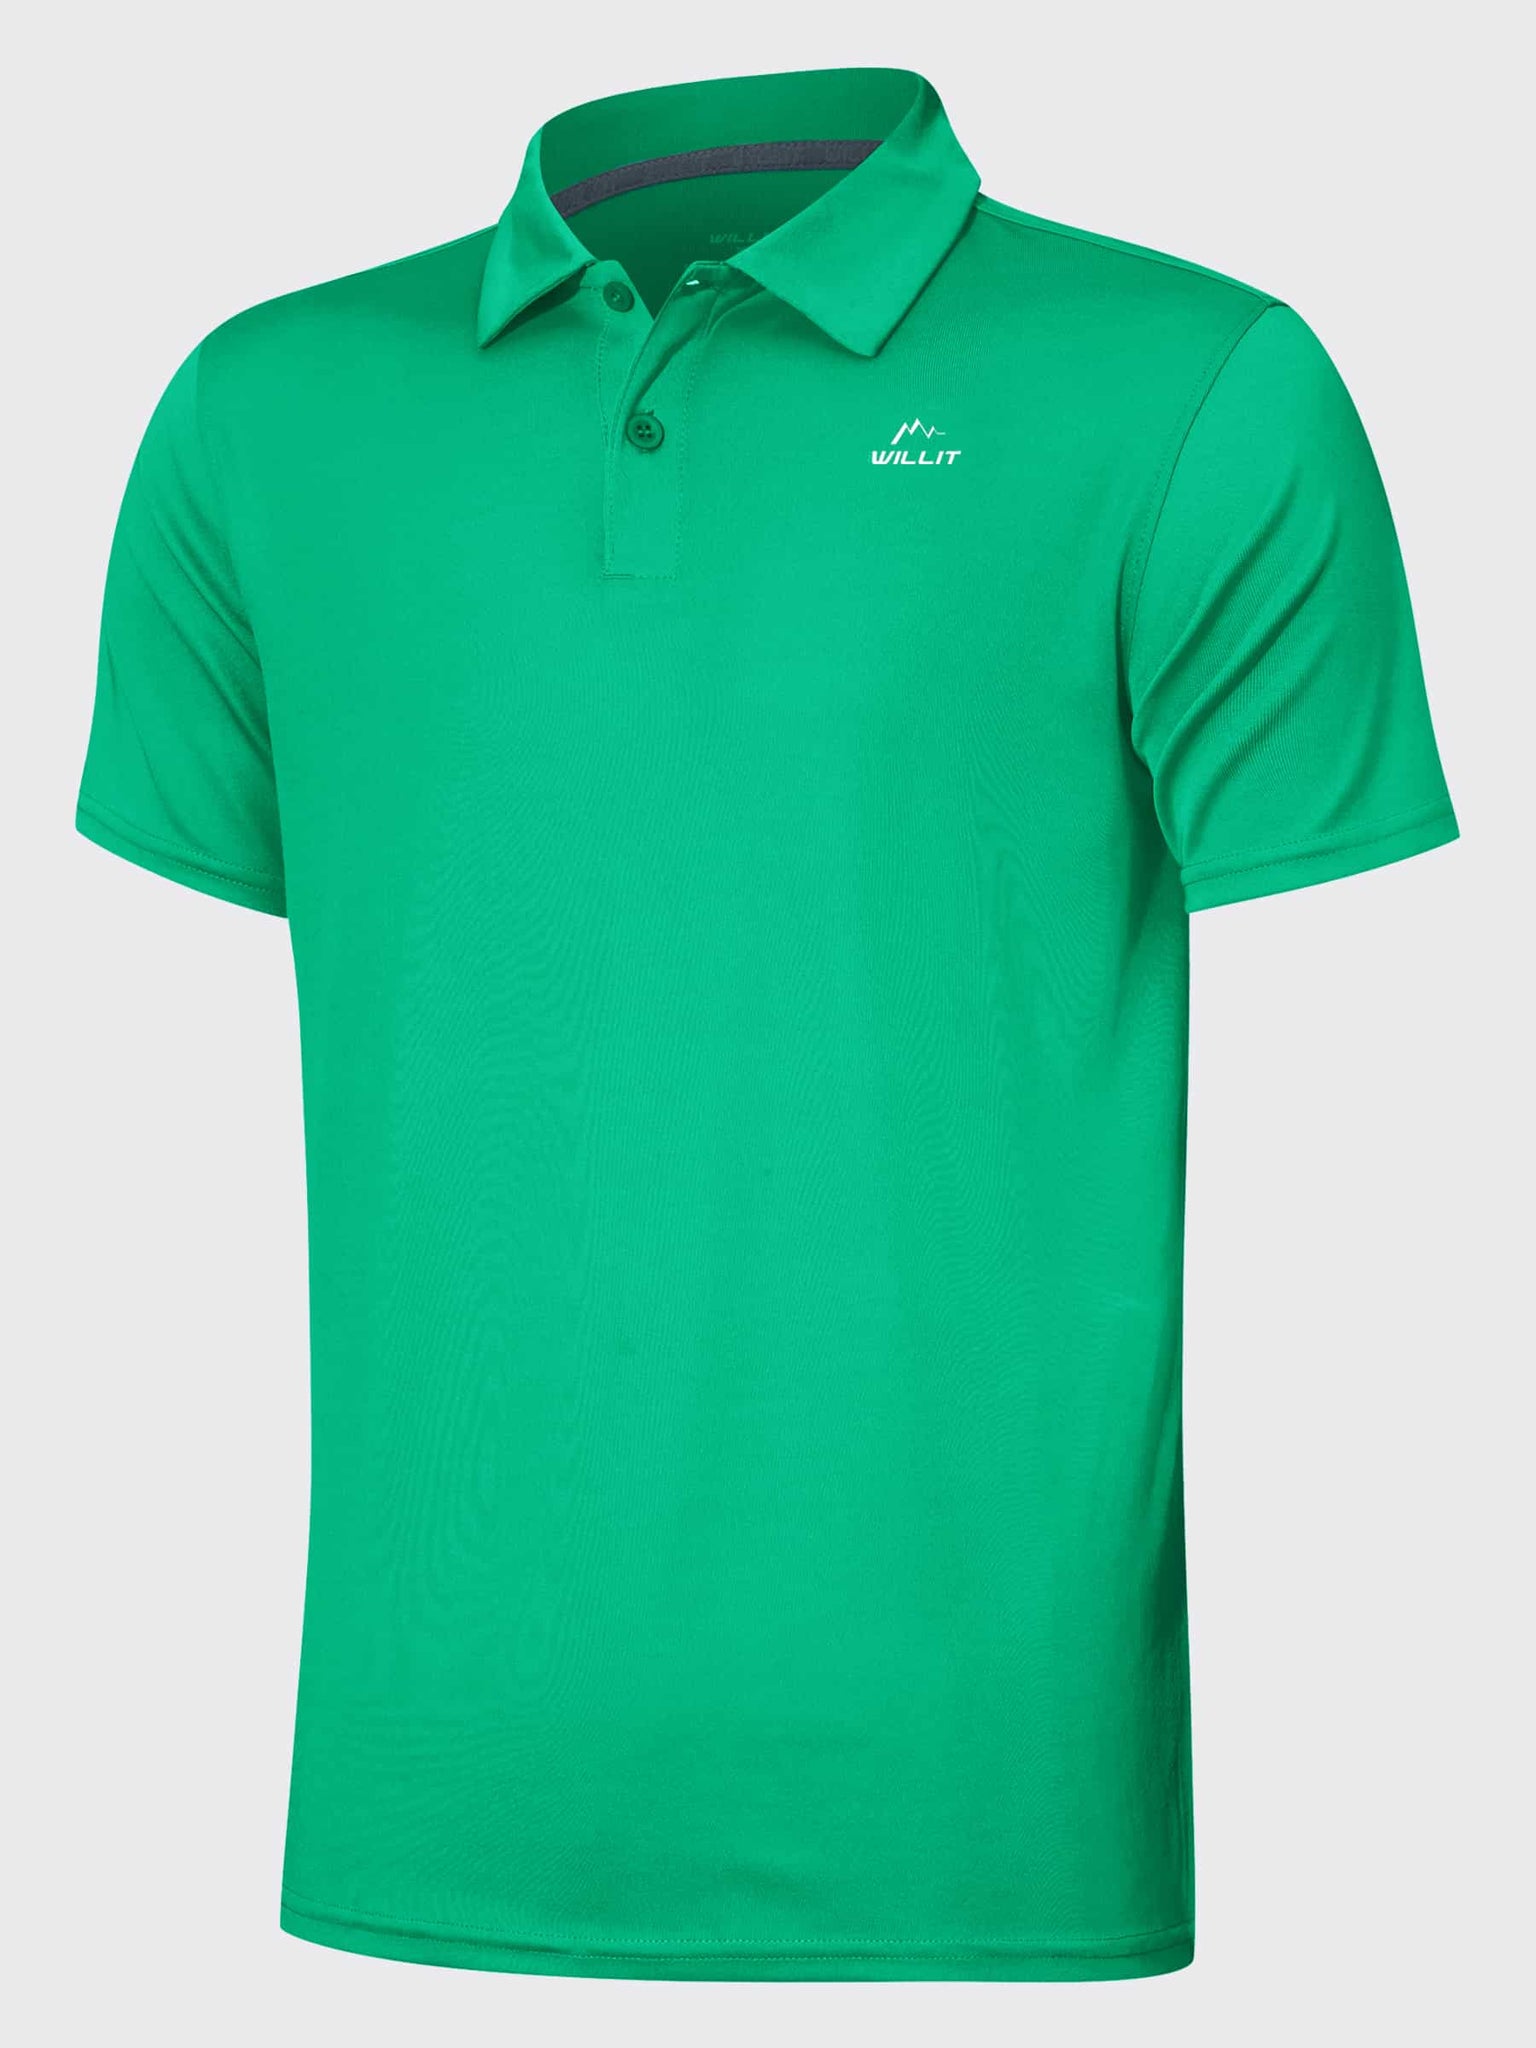 Youth Golf Polo Sun Shirts_Green_laydown1